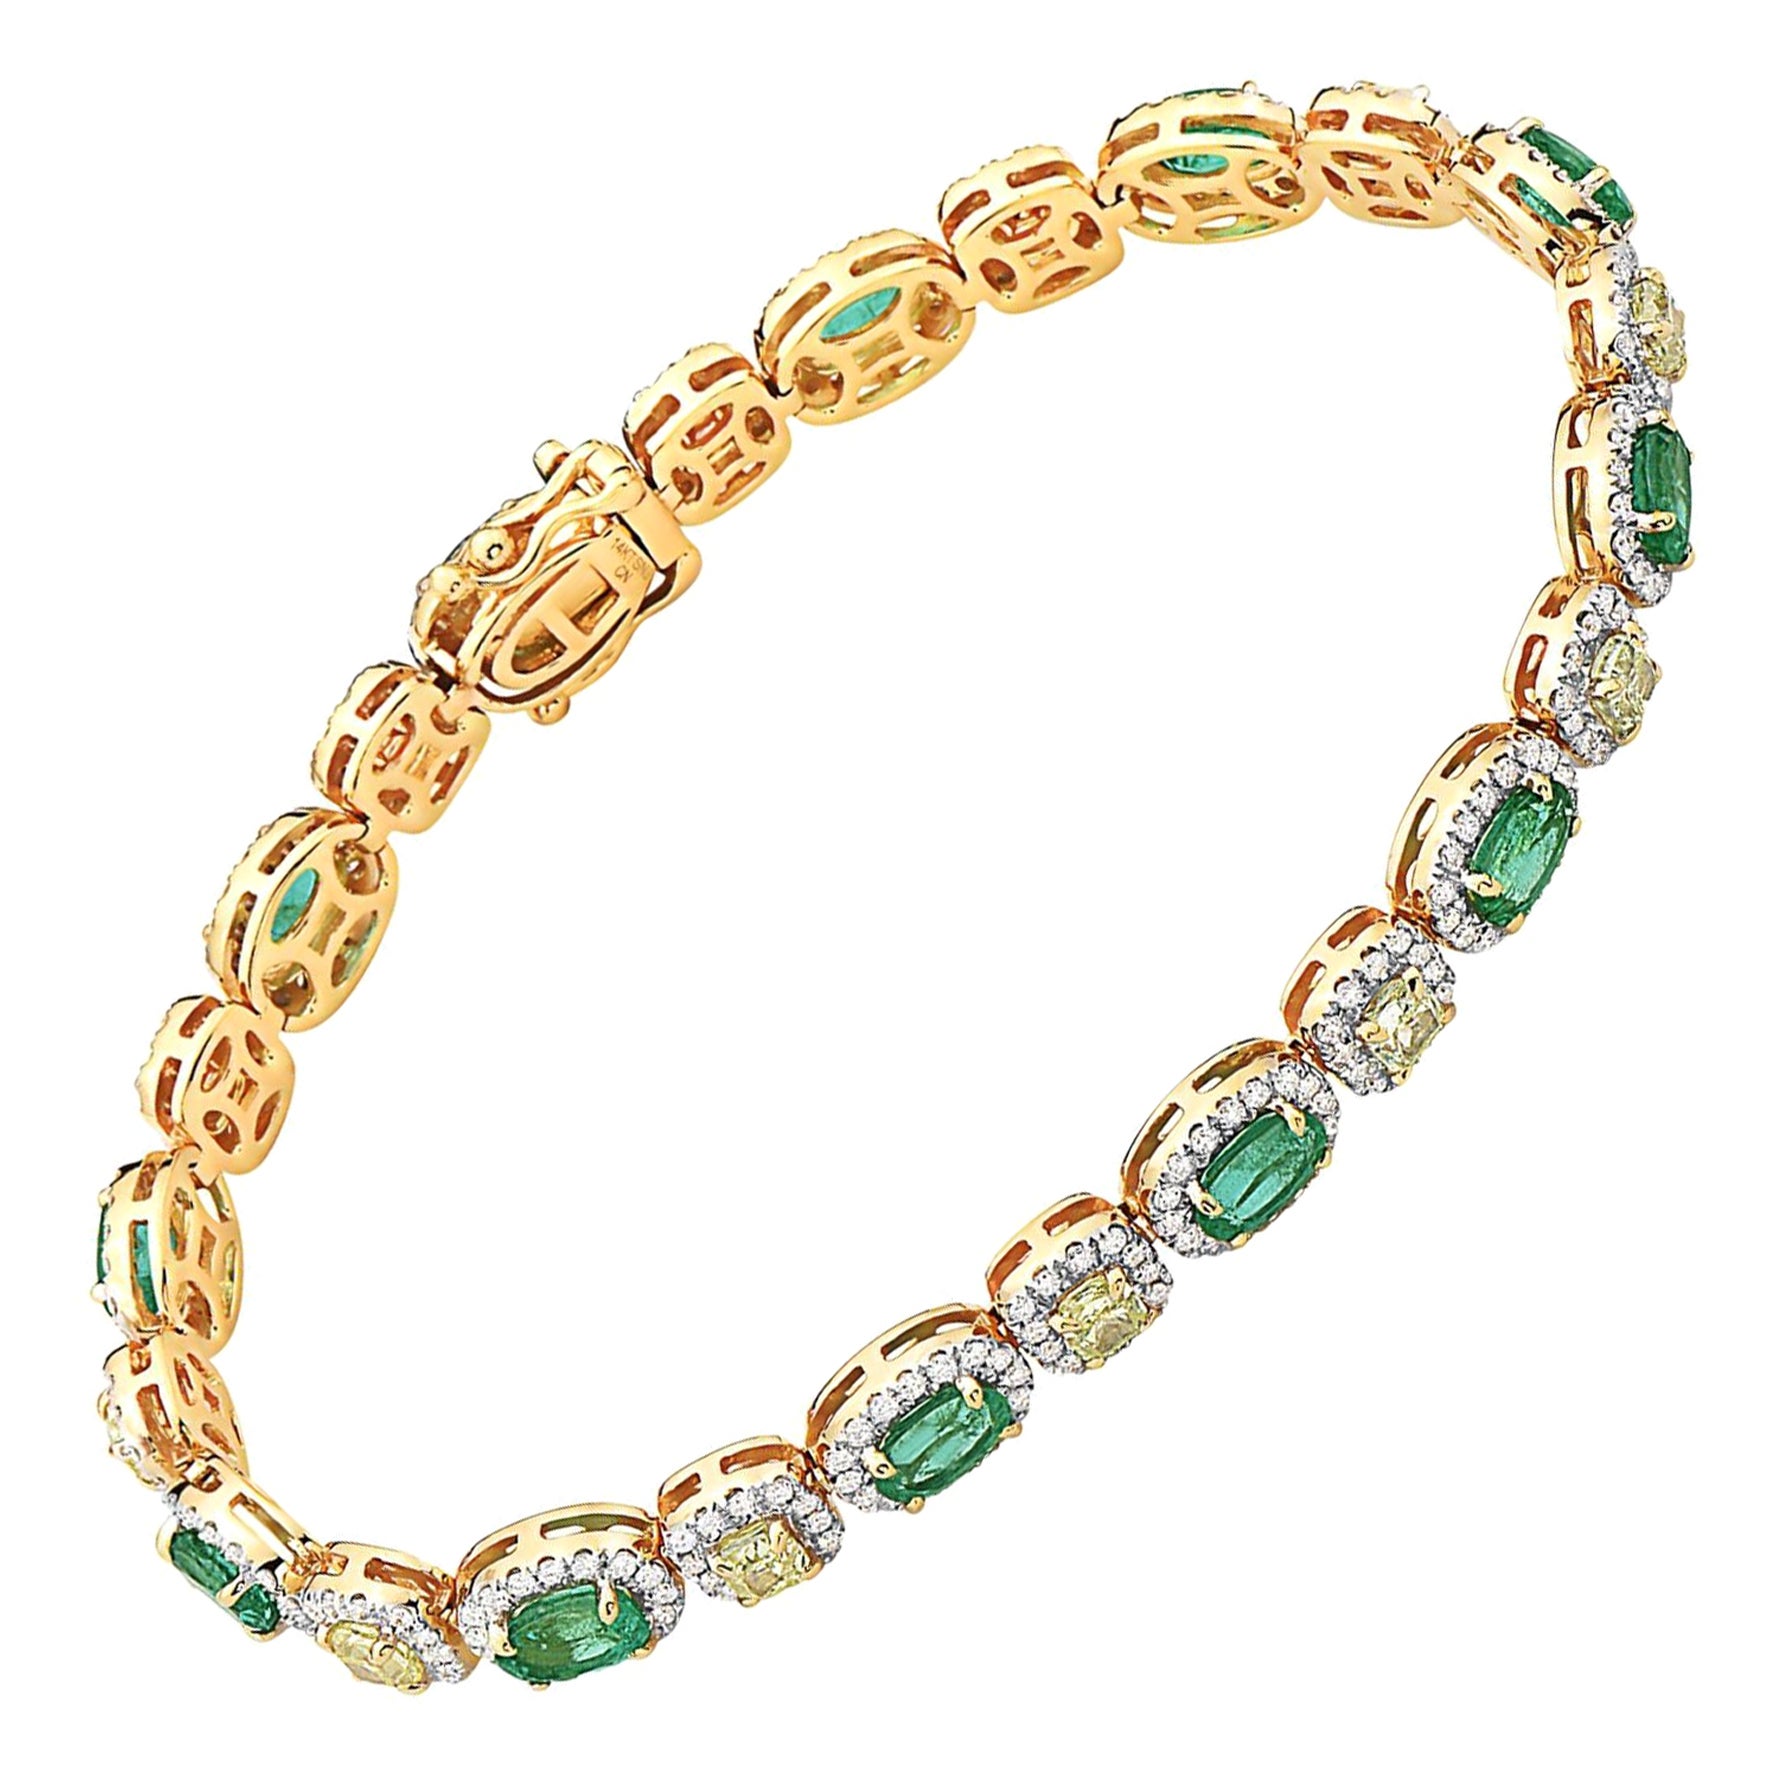 IGI-zertifiziertes Armband mit 4,50 Karat Smaragd und gelben und weißen Diamanten in 14K